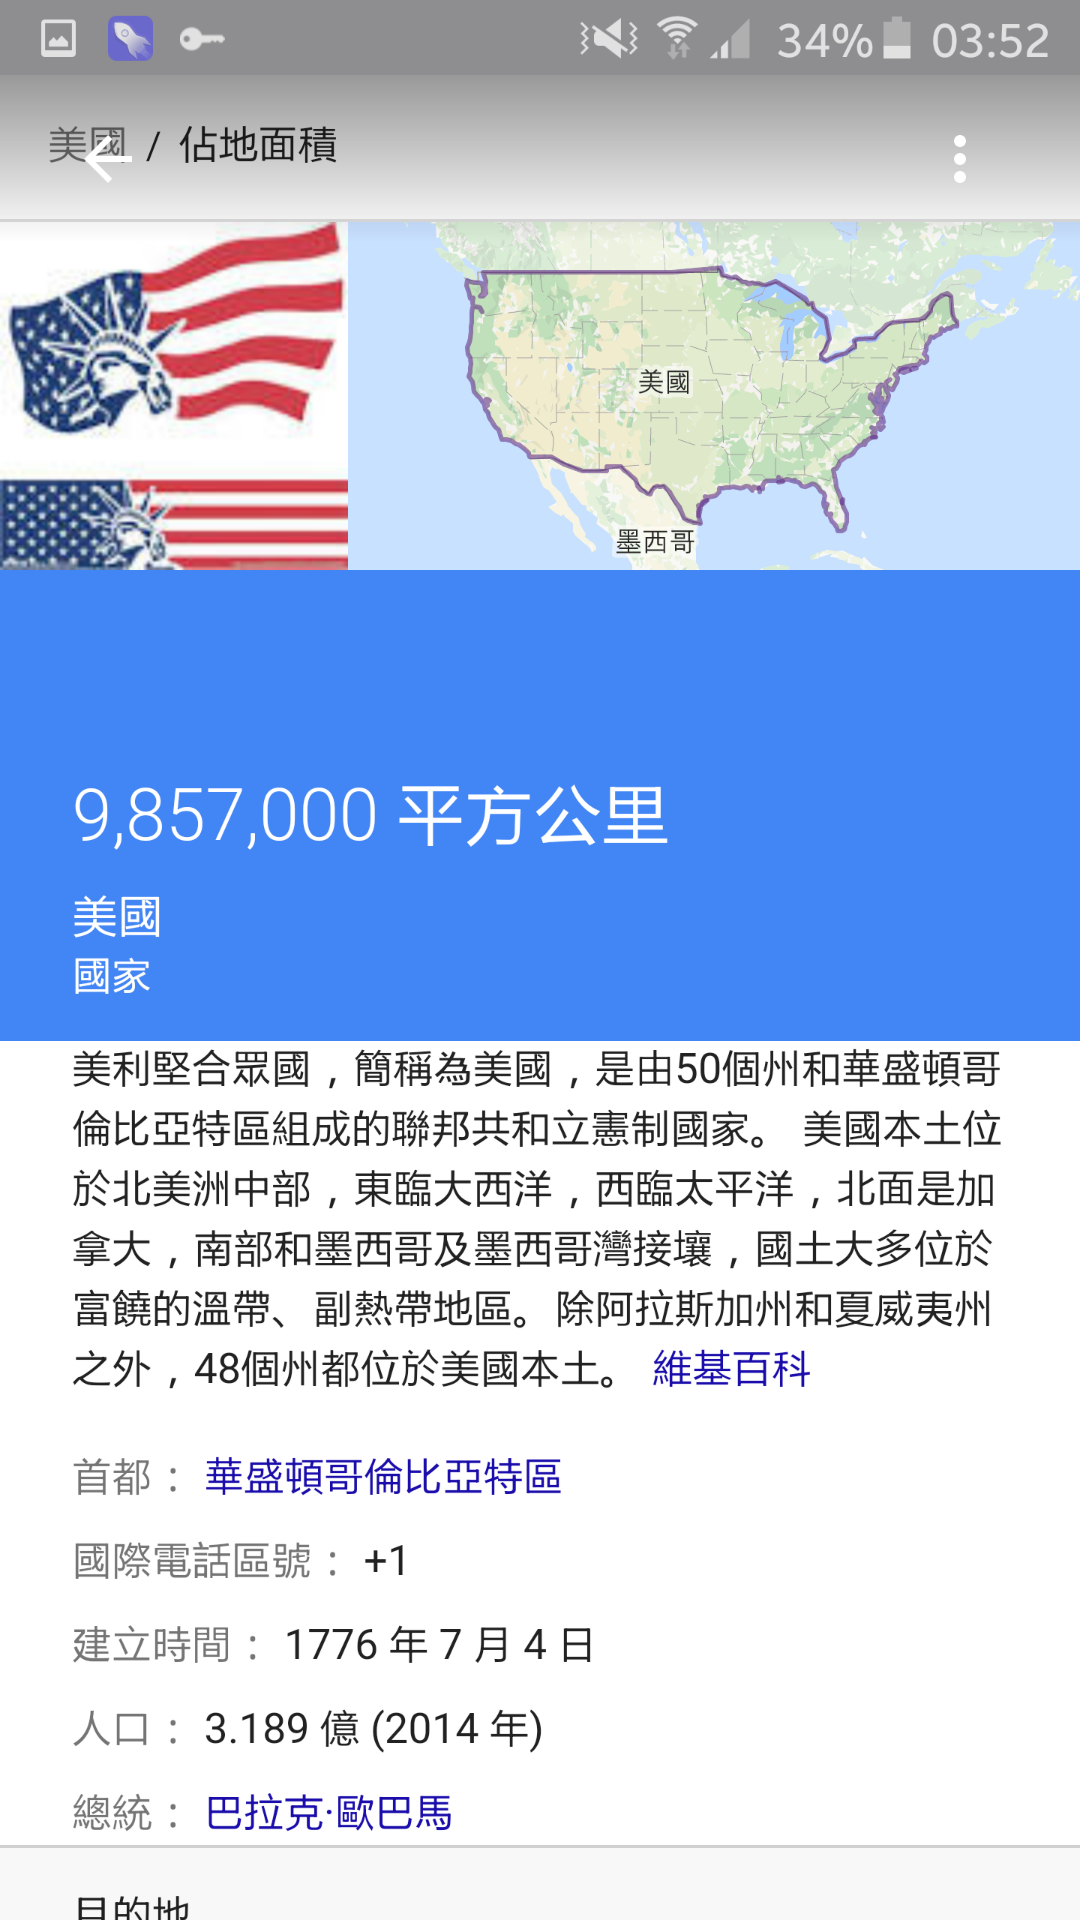 中国和美国哪个的领土面积大? - 小明的回答